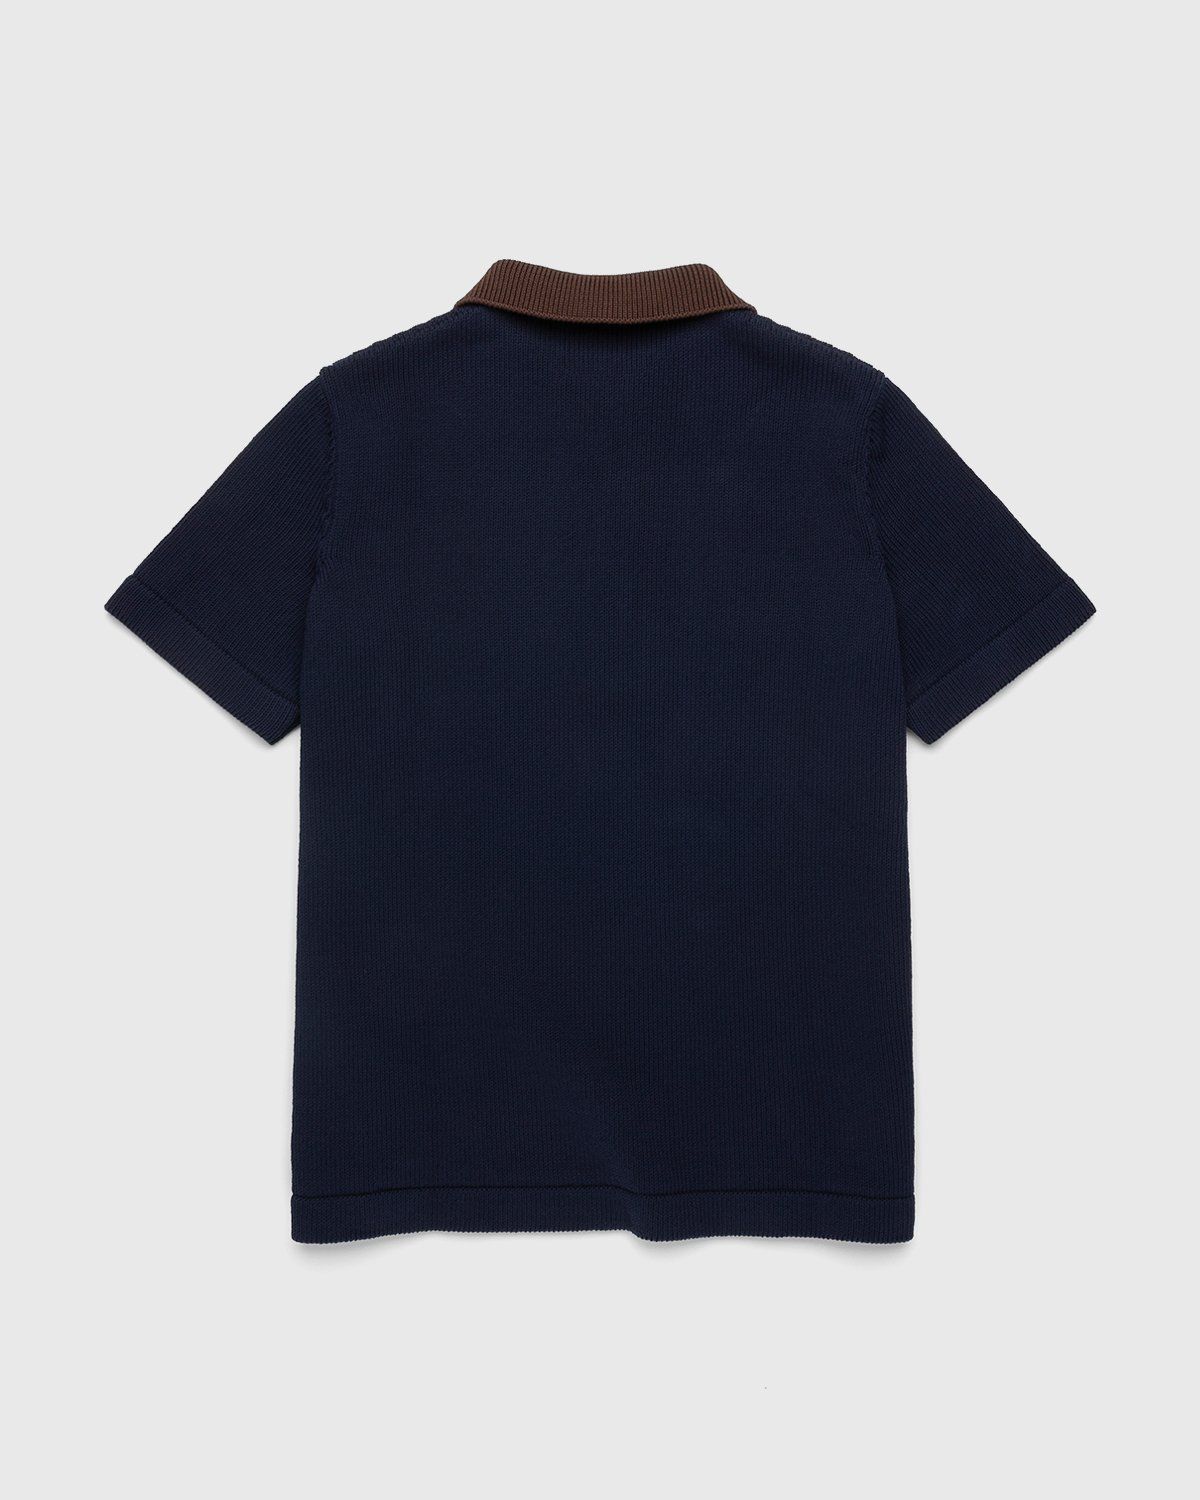 Jil Sander – Short Sleeve Knit Shirt Dark Blue - Shirts - Blue - Image 2